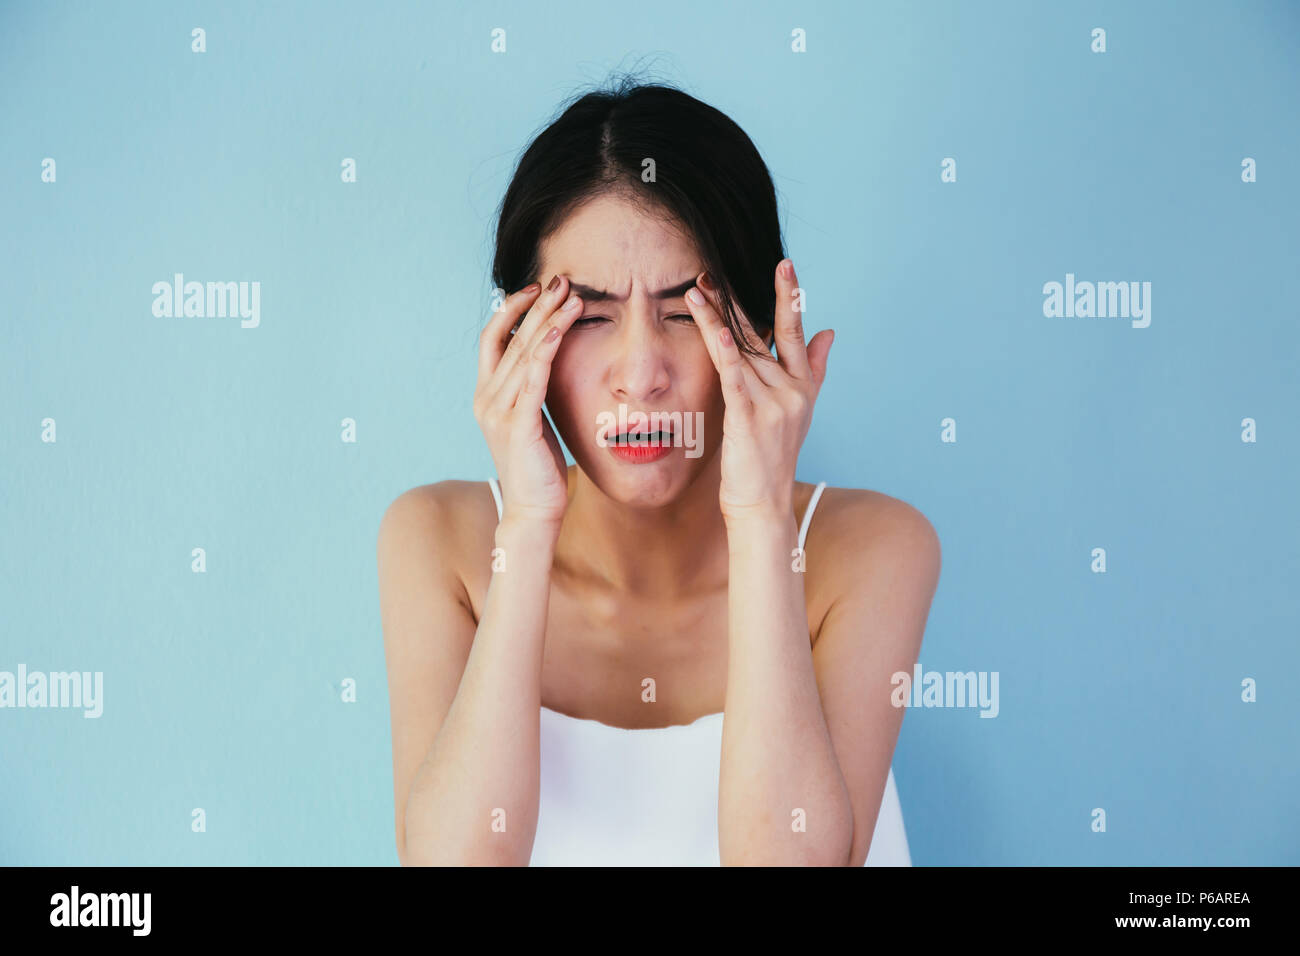 Junge asiatische Frau, die Augen schmerzen und Druckempfindlichkeit isoliert über blauer Hintergrund - Gesundheitswesen und medizinische Konzept Stockfoto